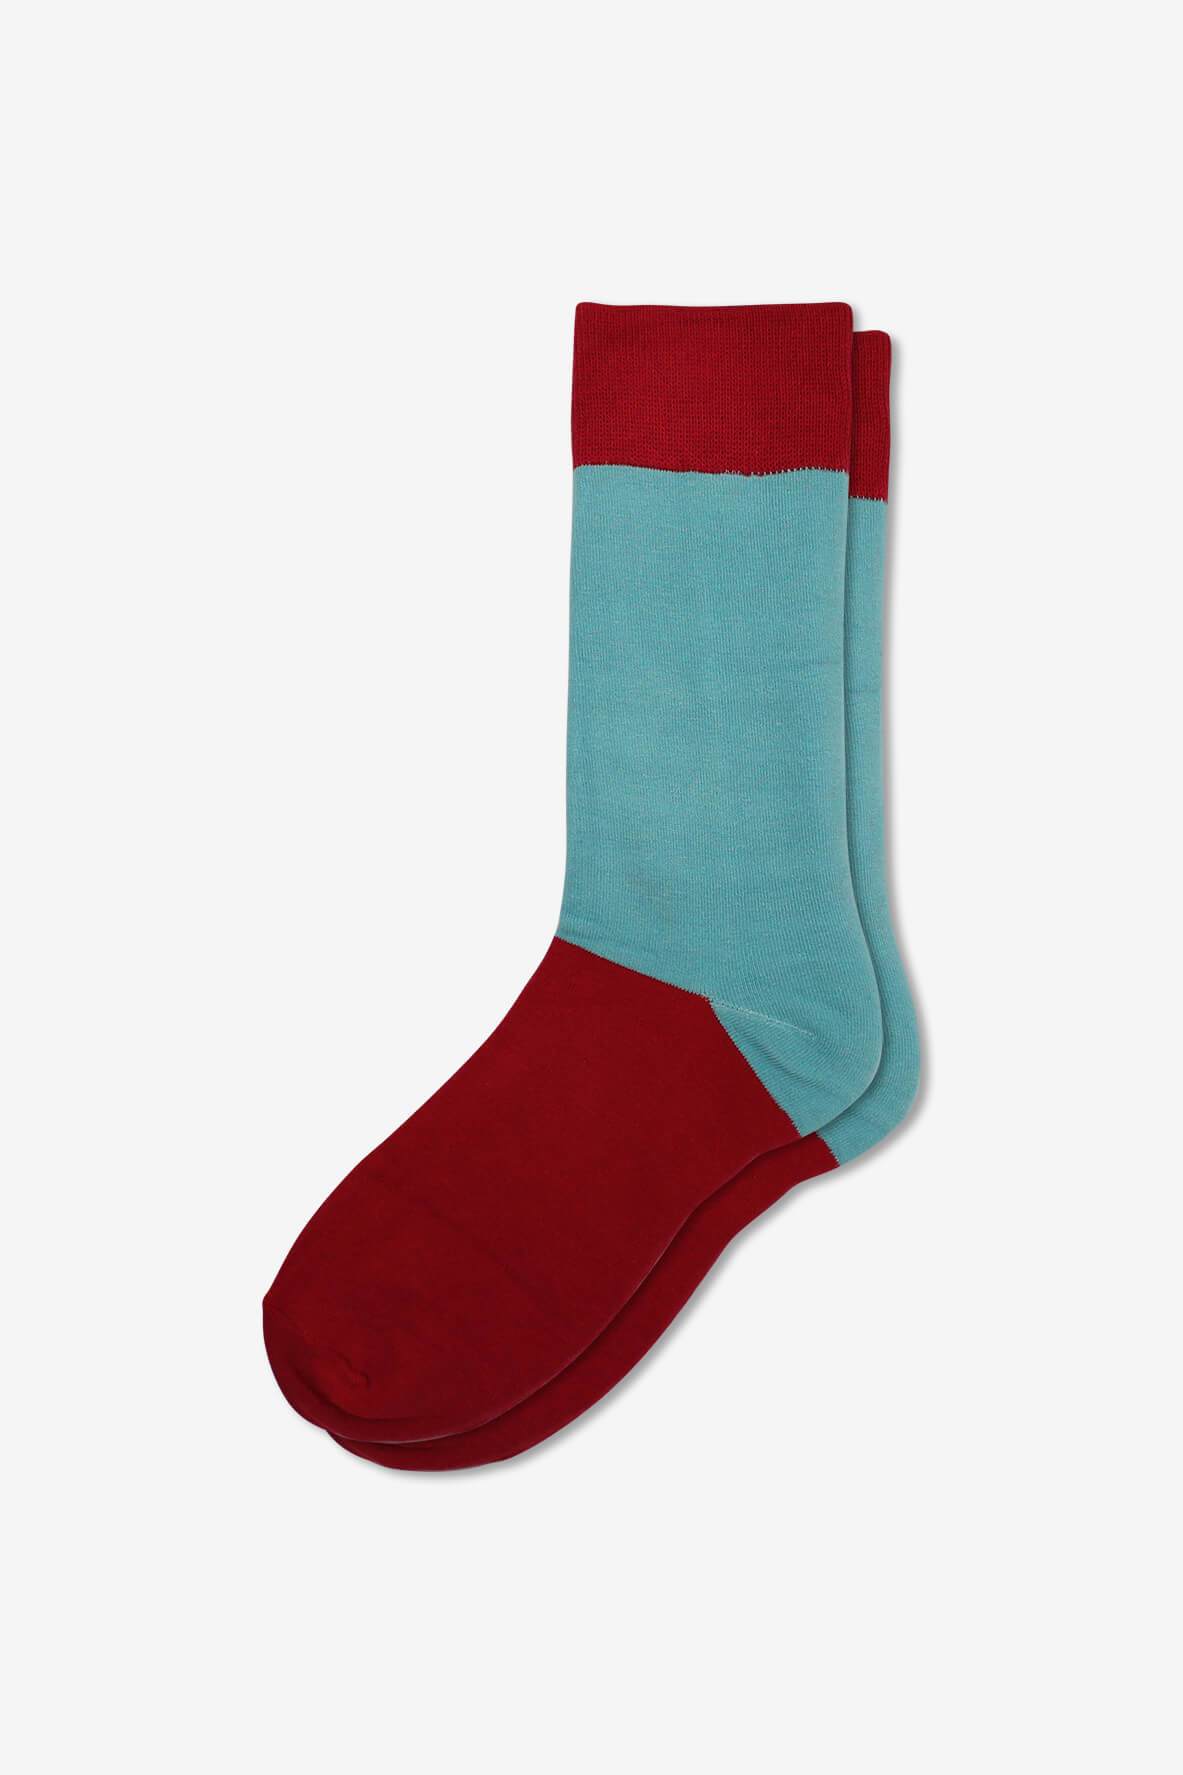 Socks IMG_5249, socks, GoTie